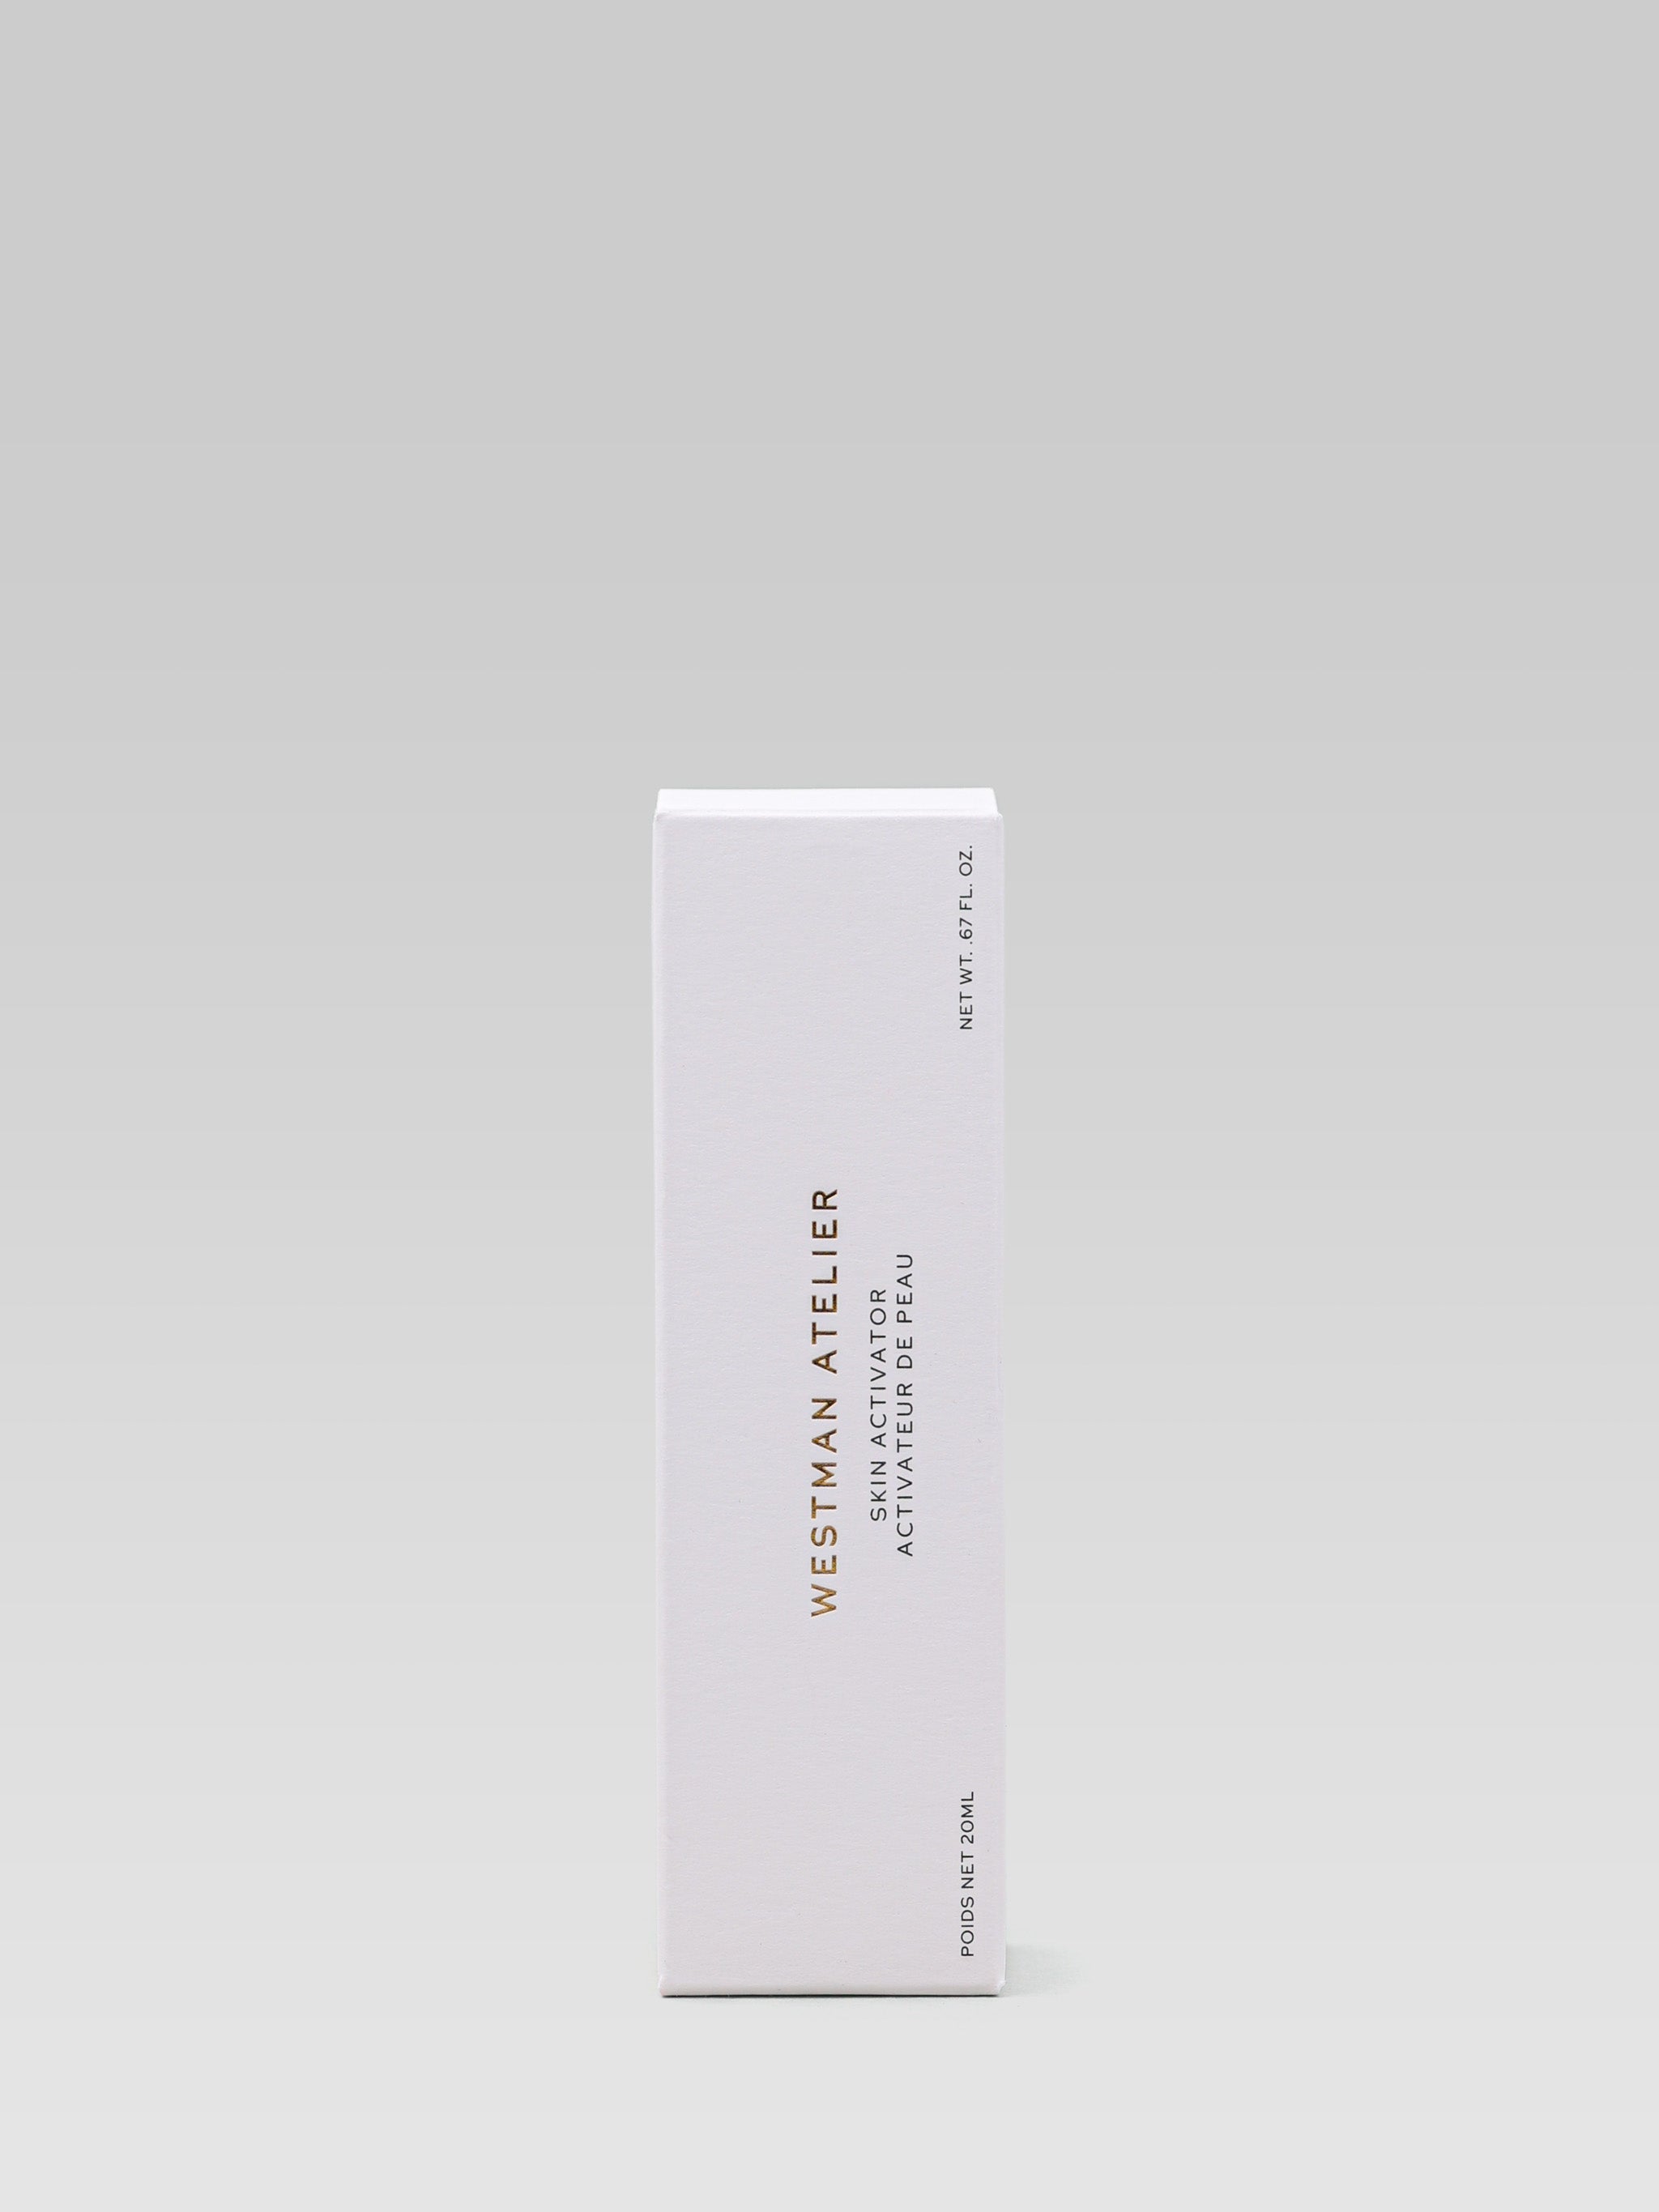 Westman ATelier Skin Activator packaging